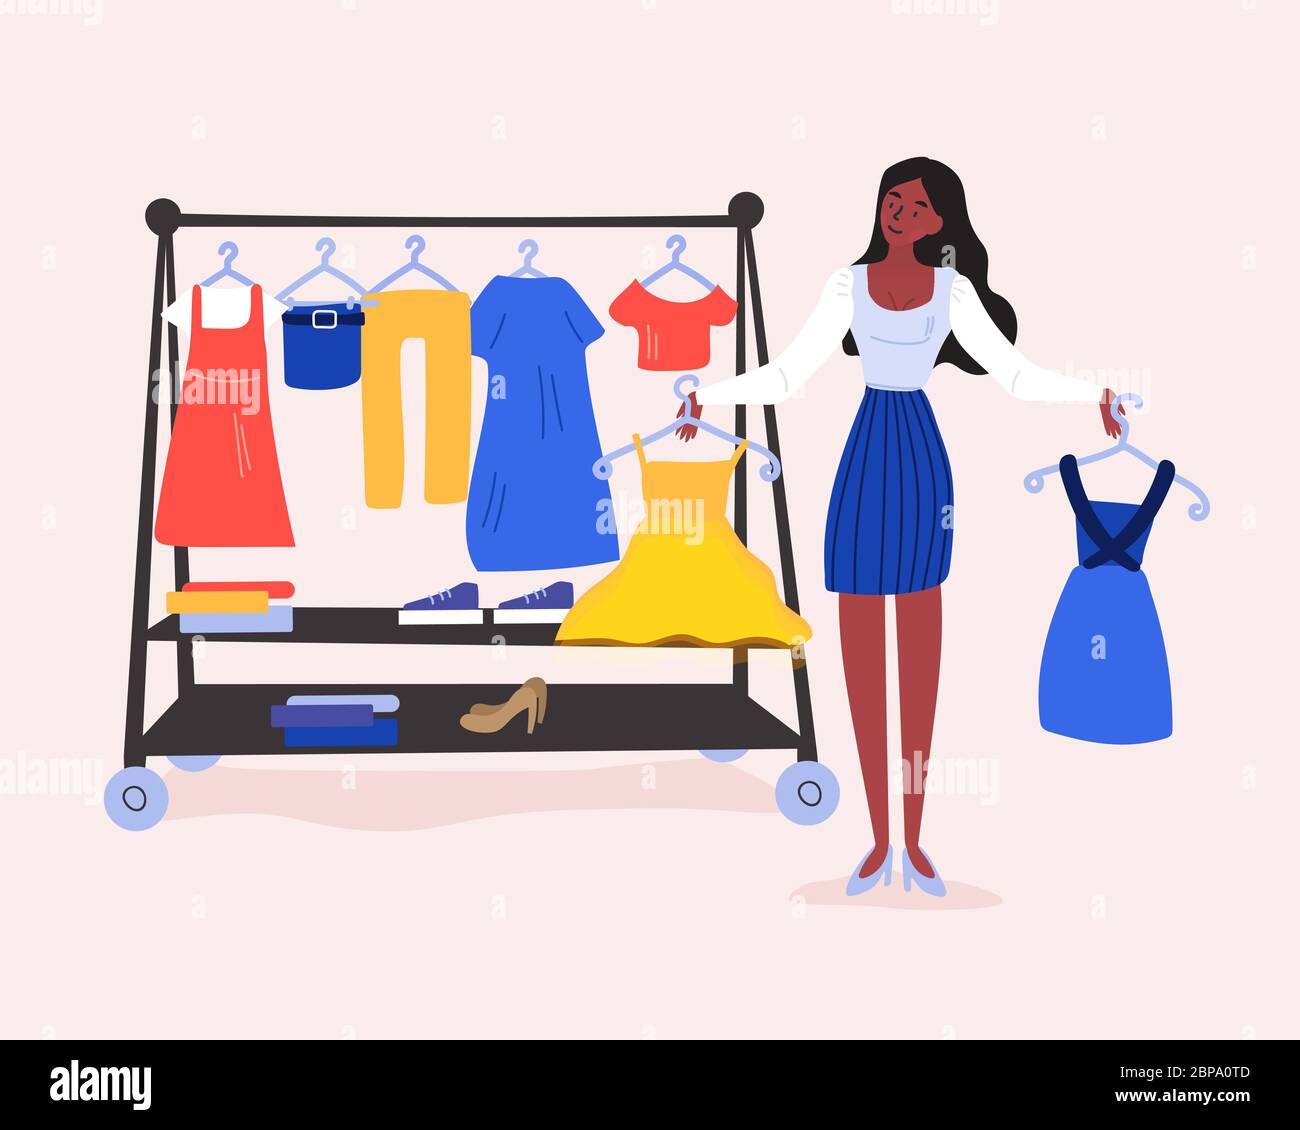 Schwierige Einkaufsentscheidung. Das junge Mädchen kann nicht entscheiden, welches Kleid sie im Laden kaufen oder was sie für das Datum anziehen soll. Pinker Hintergrund Stock Vektor